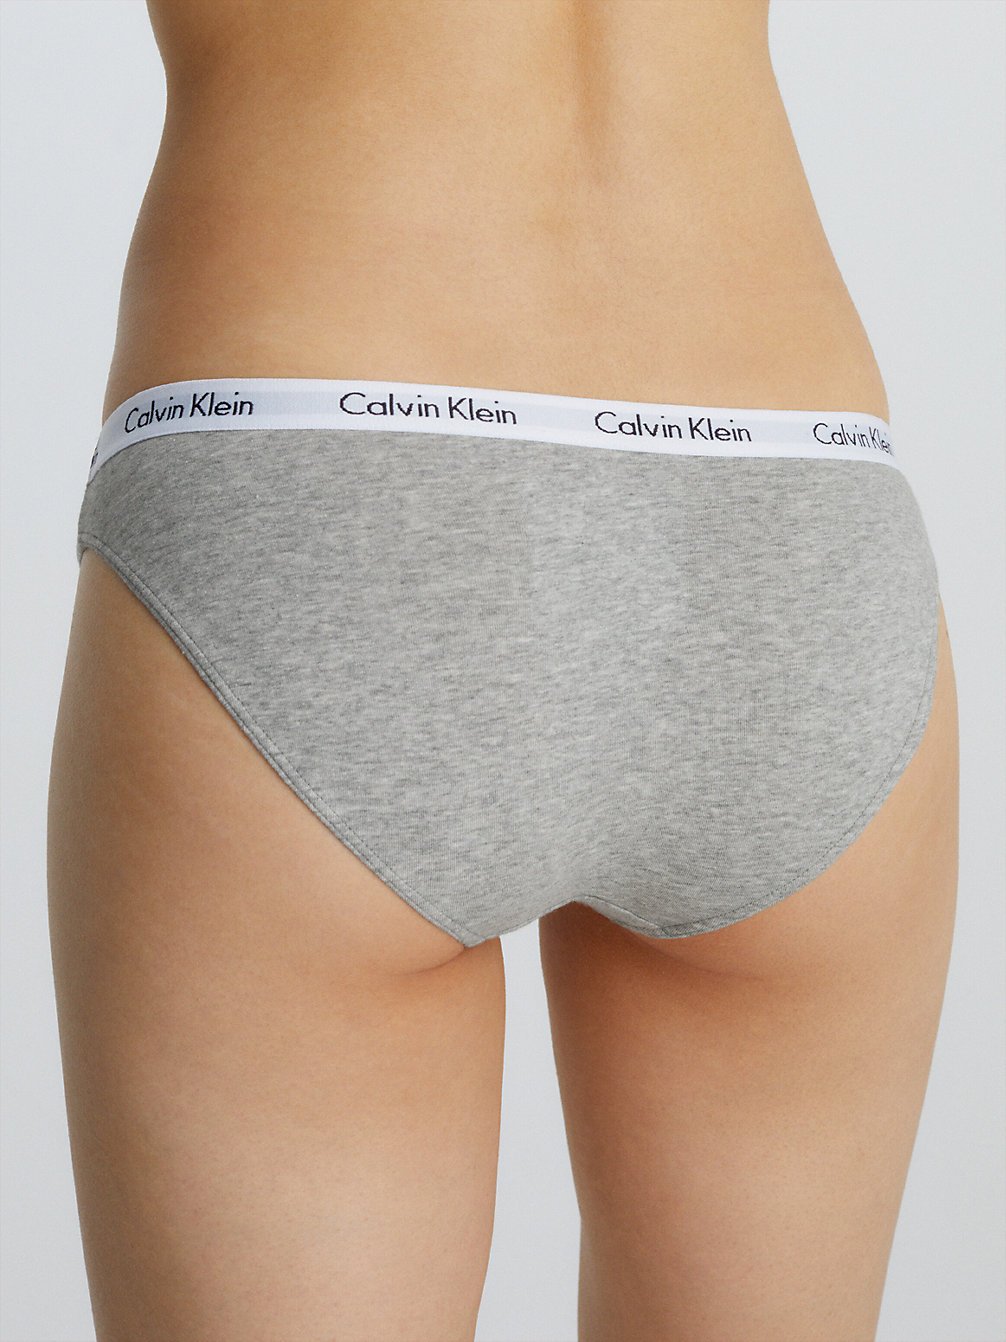 GREY HEATHER Slip Bikini - Carousel undefined donna Calvin Klein